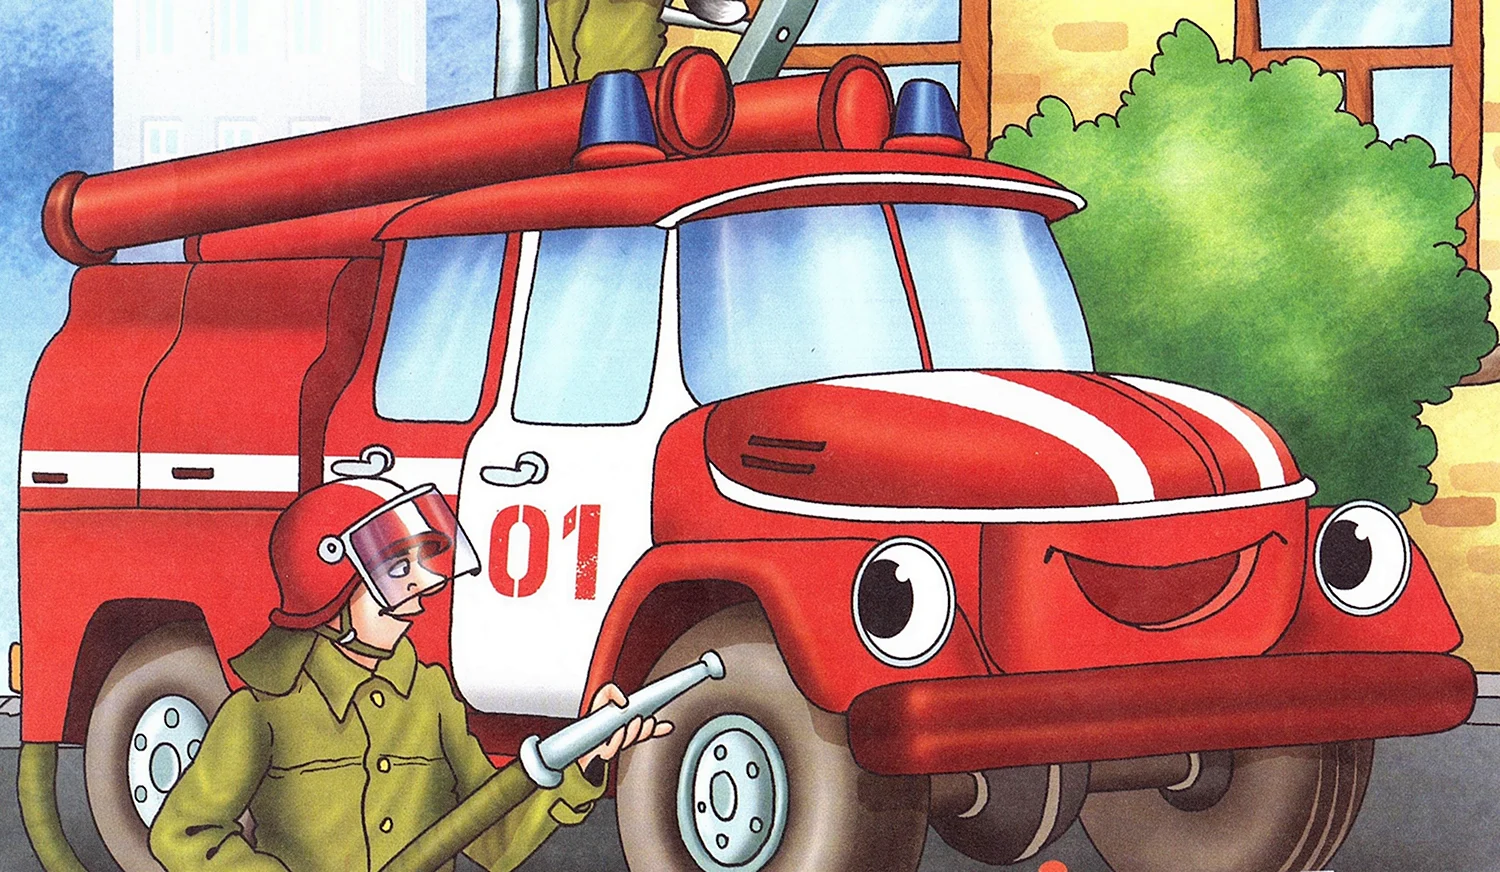 Пожарная машина ЗИЛ 131 рисунок